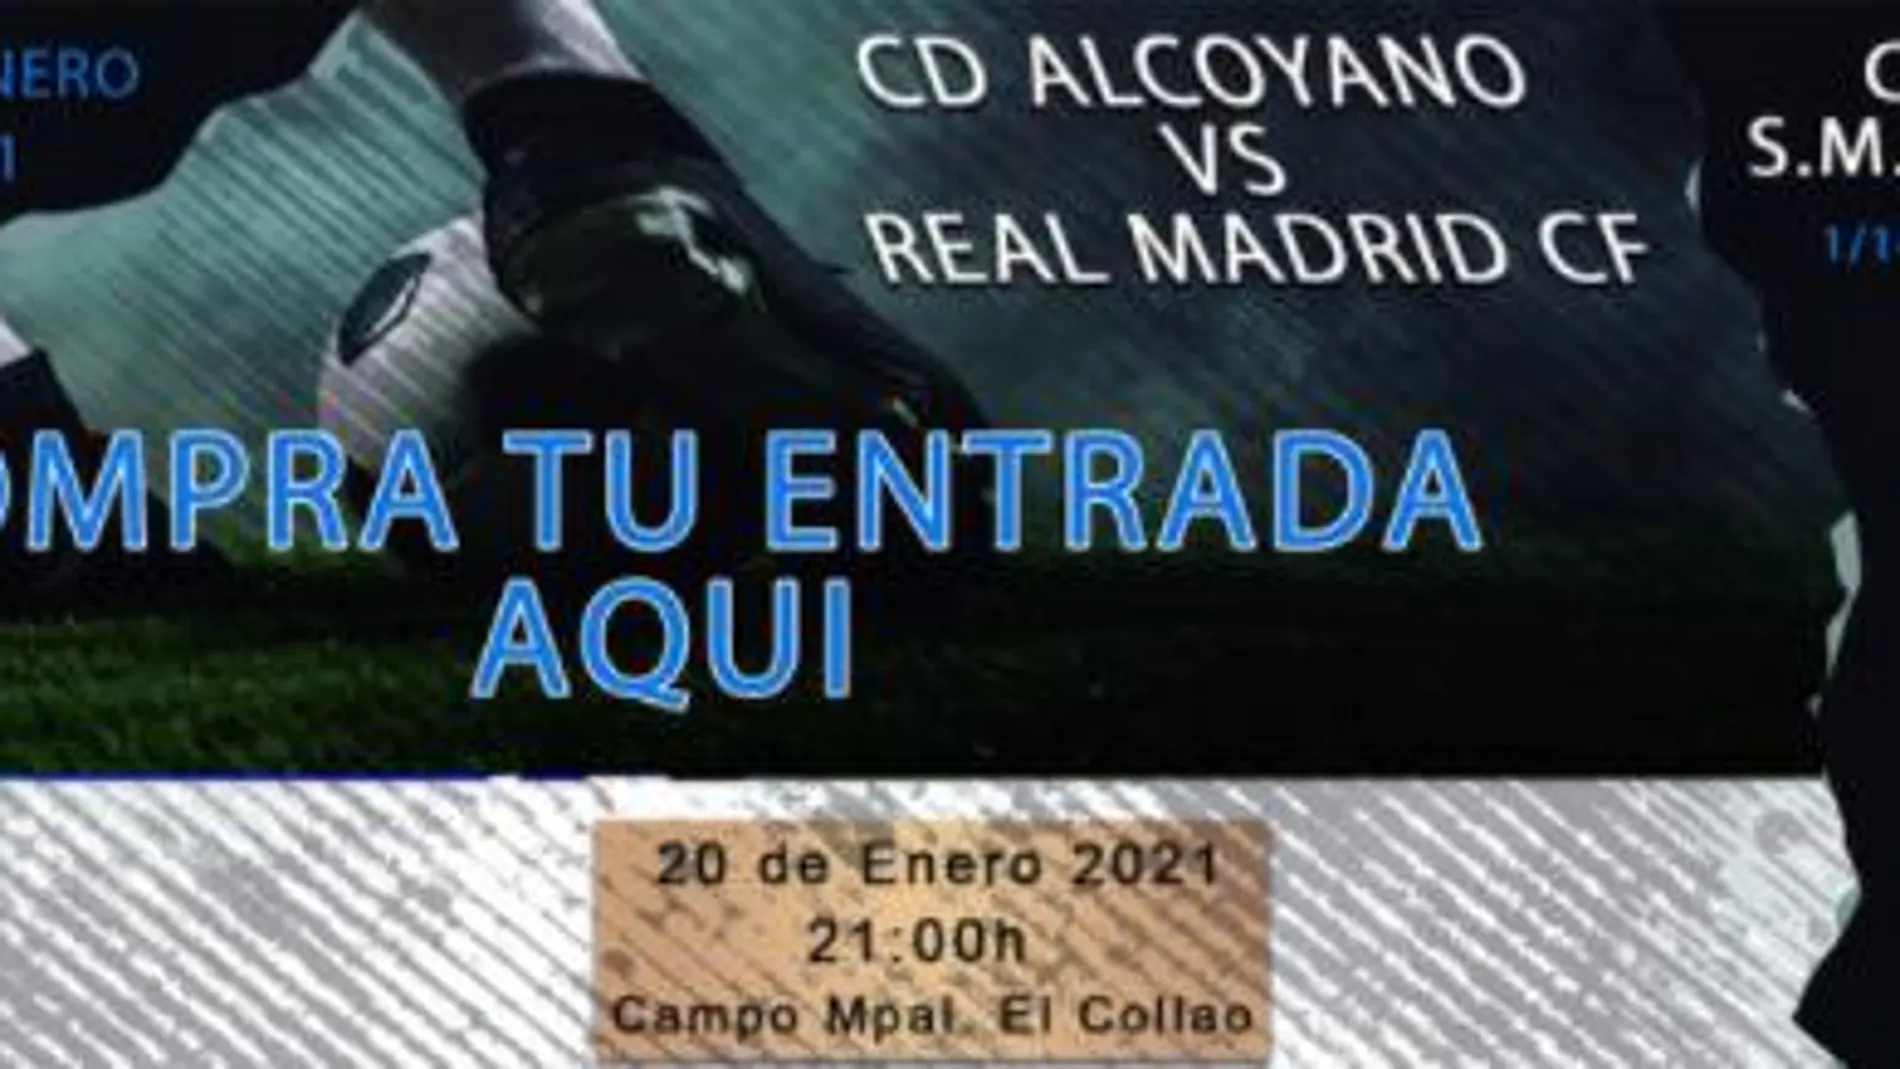 Anuncio de la venta de entradas virtuales para el Alcoyano-Real Madrid